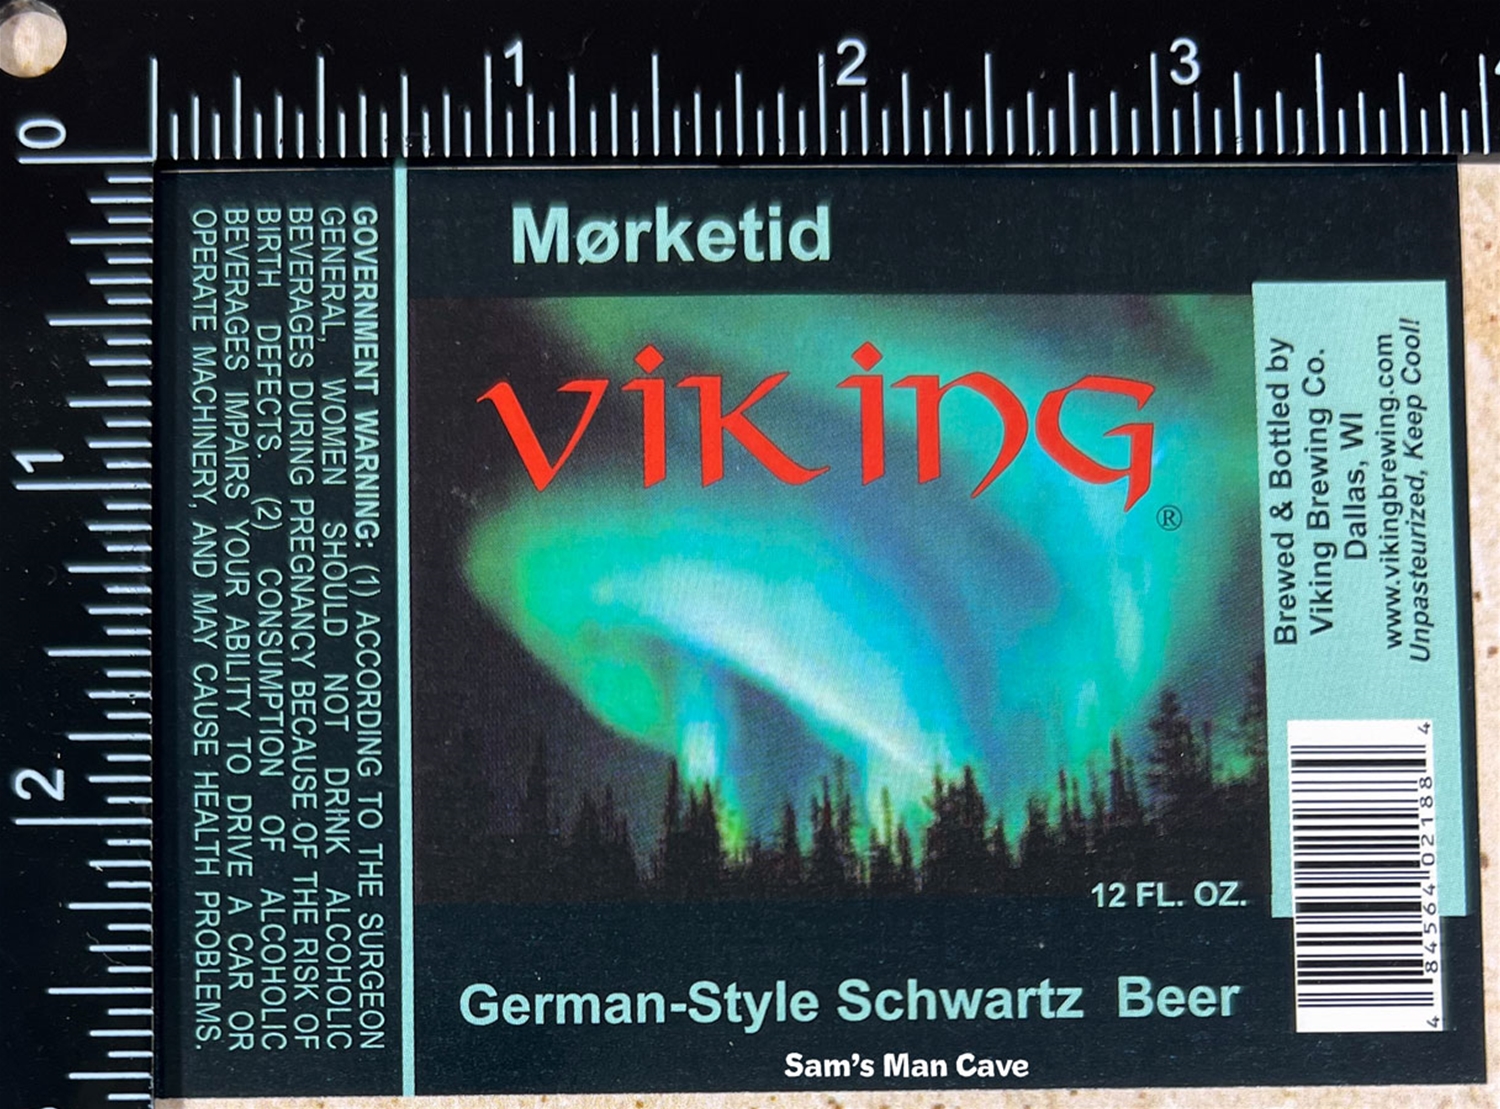 Viking Morketid Beer Label